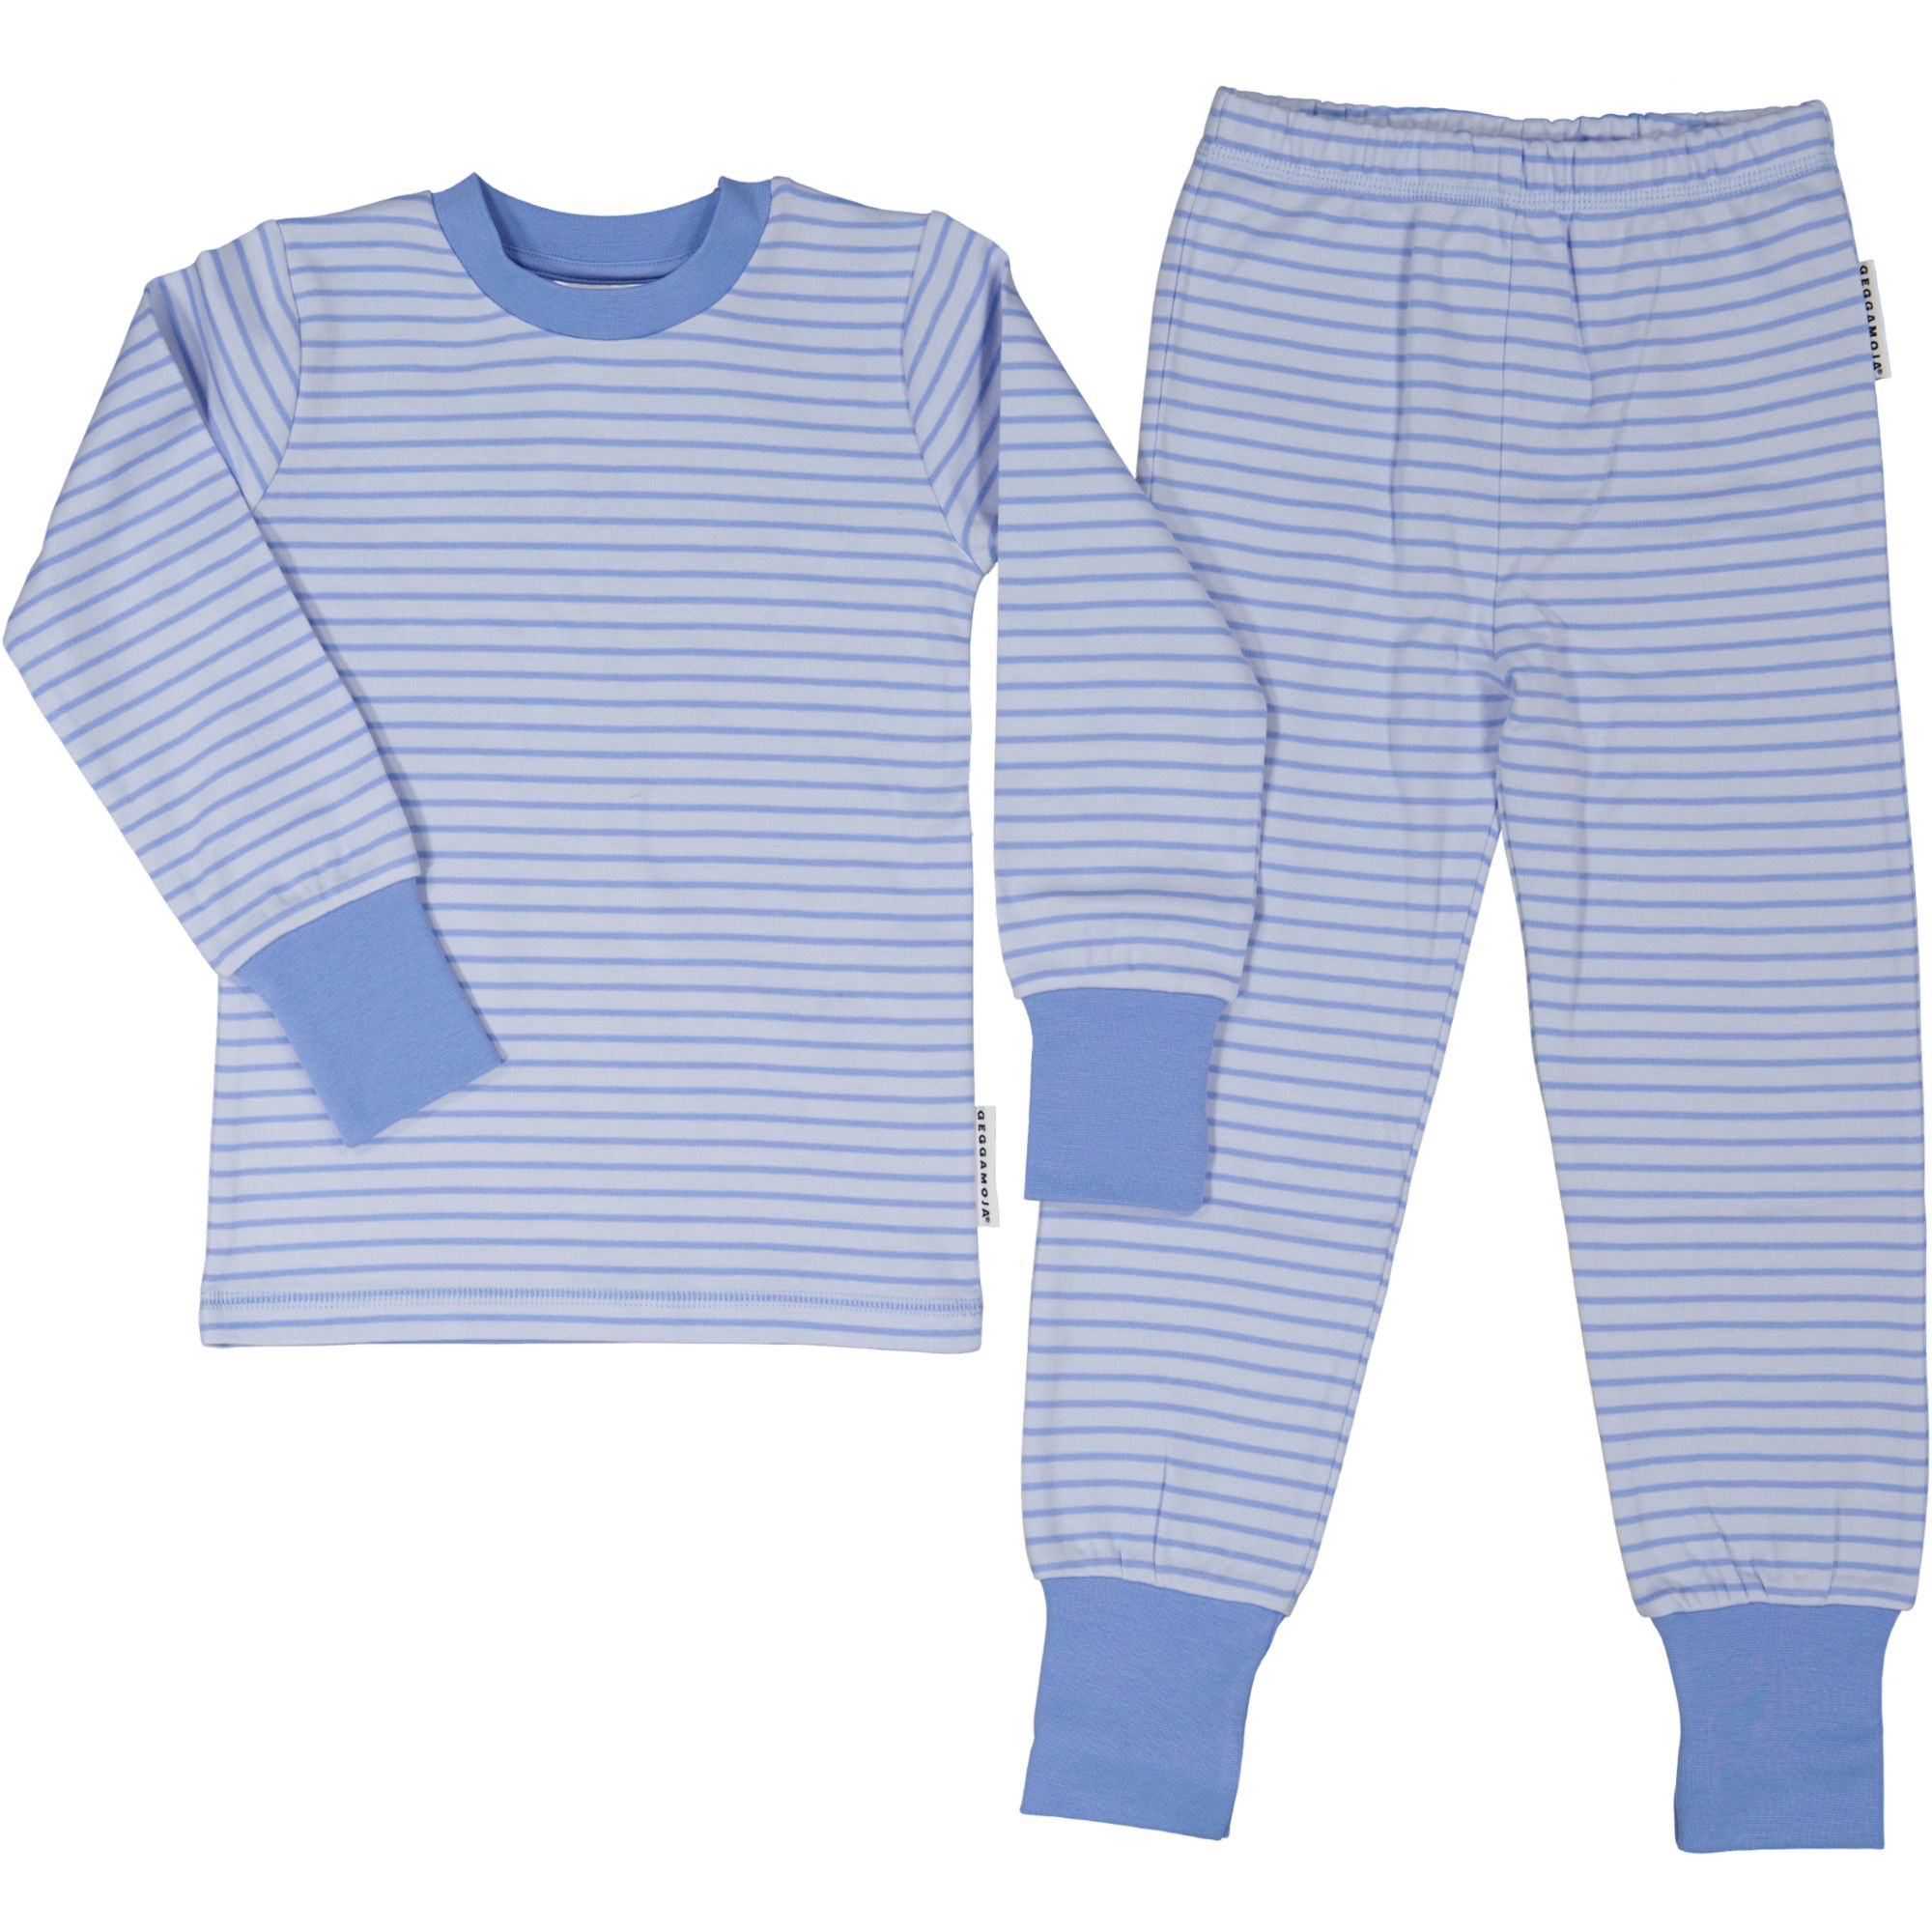 Two pcs pyjamas Light blue/blue  98/104